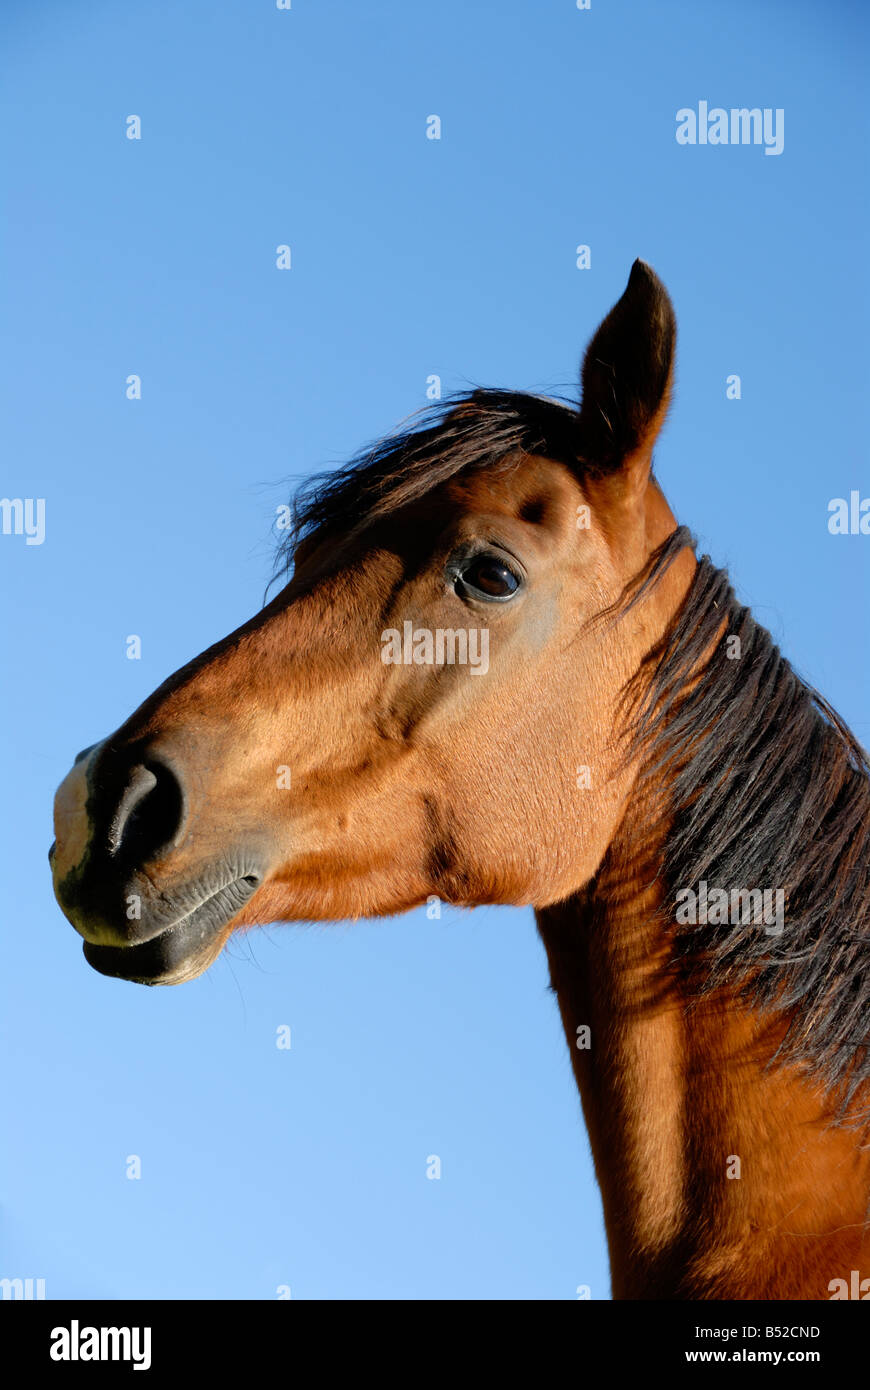 Stock Foto von einem arabischen Pferd das Bild wurde vor einem tiefblauen Himmel und wurde in der Region Limousin in Frankreich übernommen Stockfoto